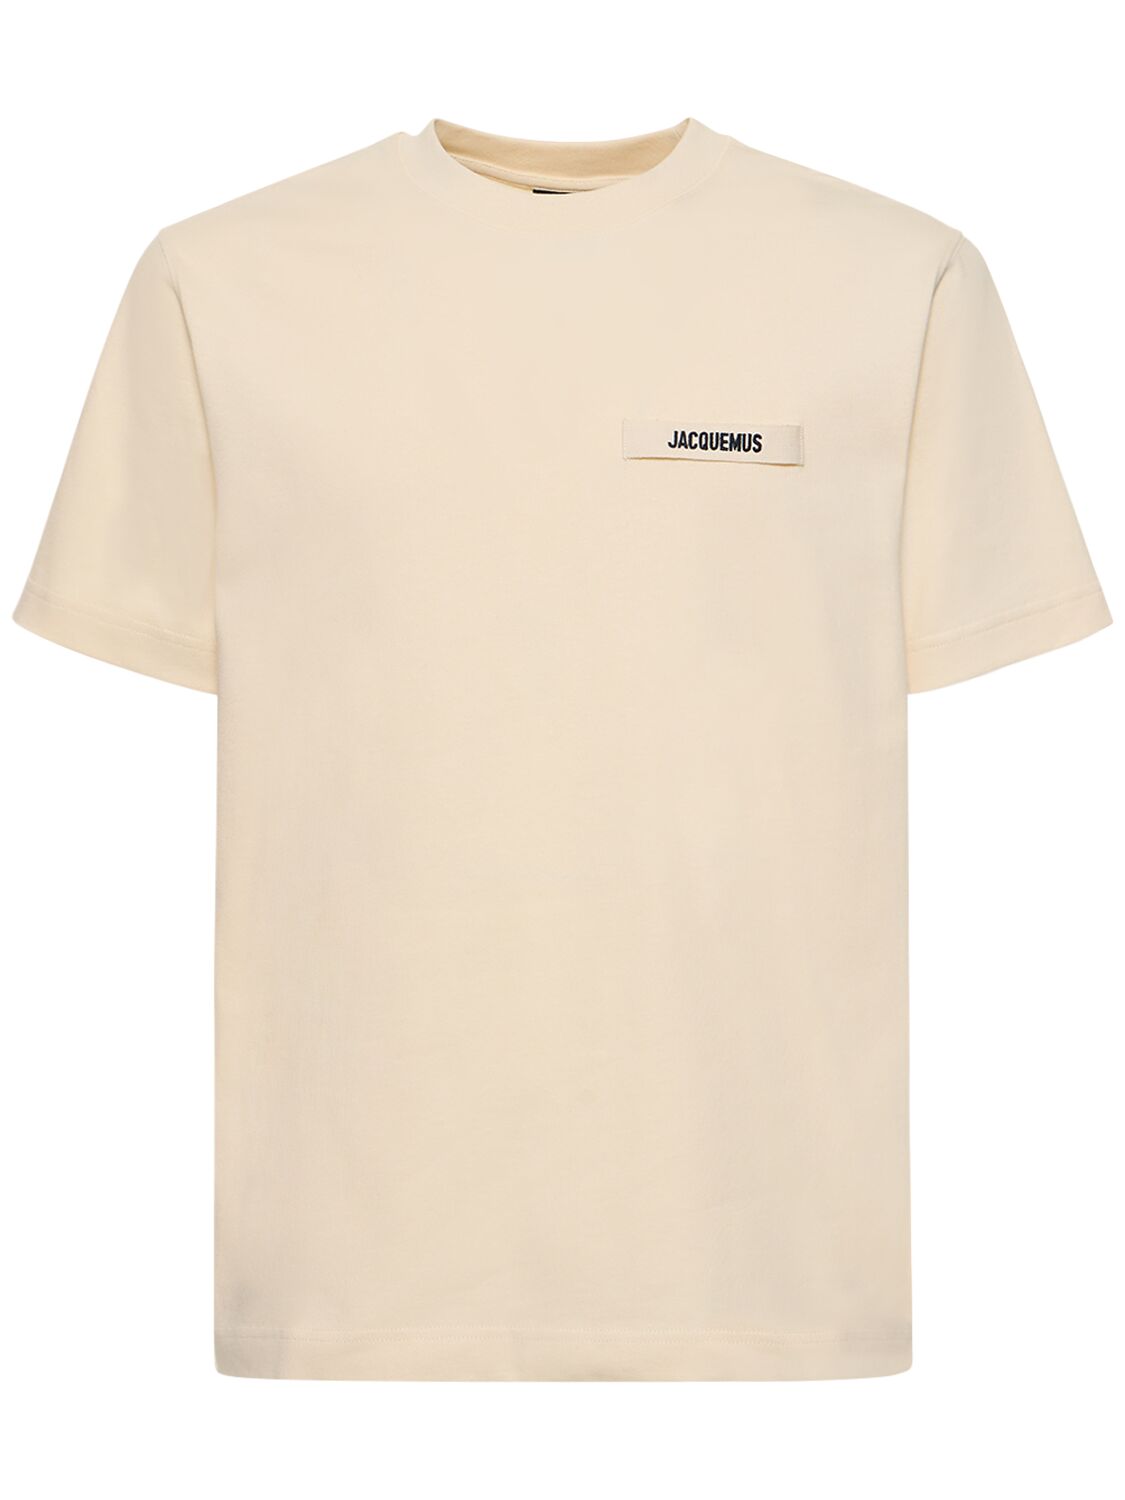 T-shirt Le Tshirt Gros Grain In Cotone - JACQUEMUS - Modalova